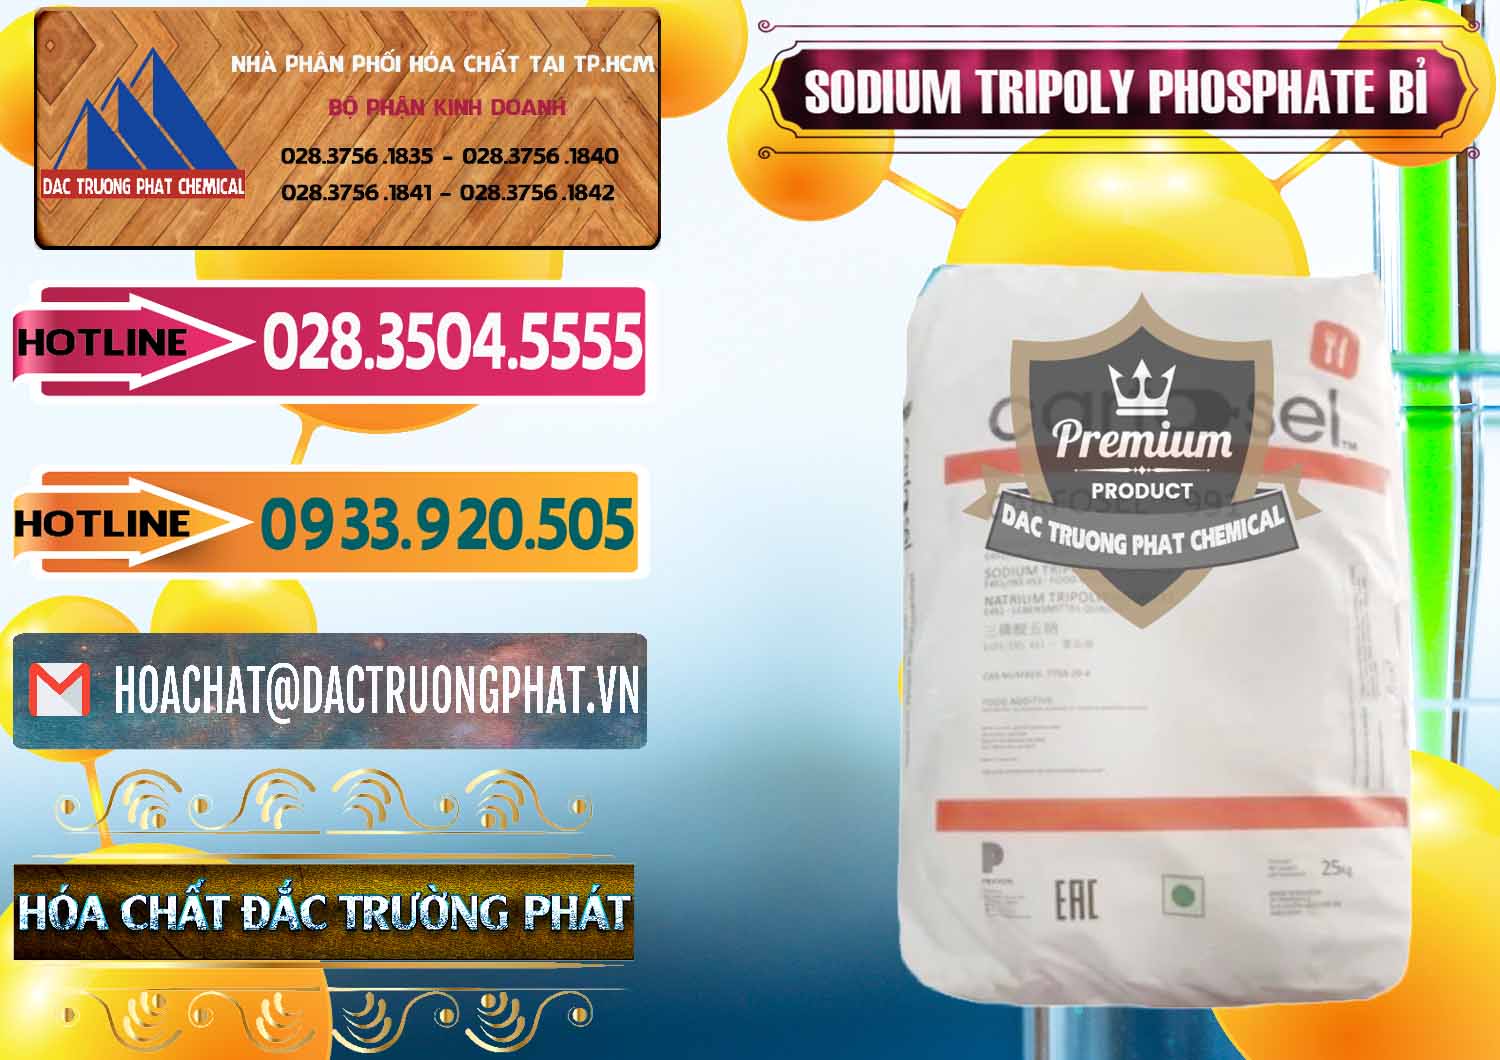 Đơn vị chuyên bán ( cung cấp ) Sodium Tripoly Phosphate - STPP Carfosel 991 Bỉ Belgium - 0429 - Đơn vị phân phối và cung cấp hóa chất tại TP.HCM - dactruongphat.vn